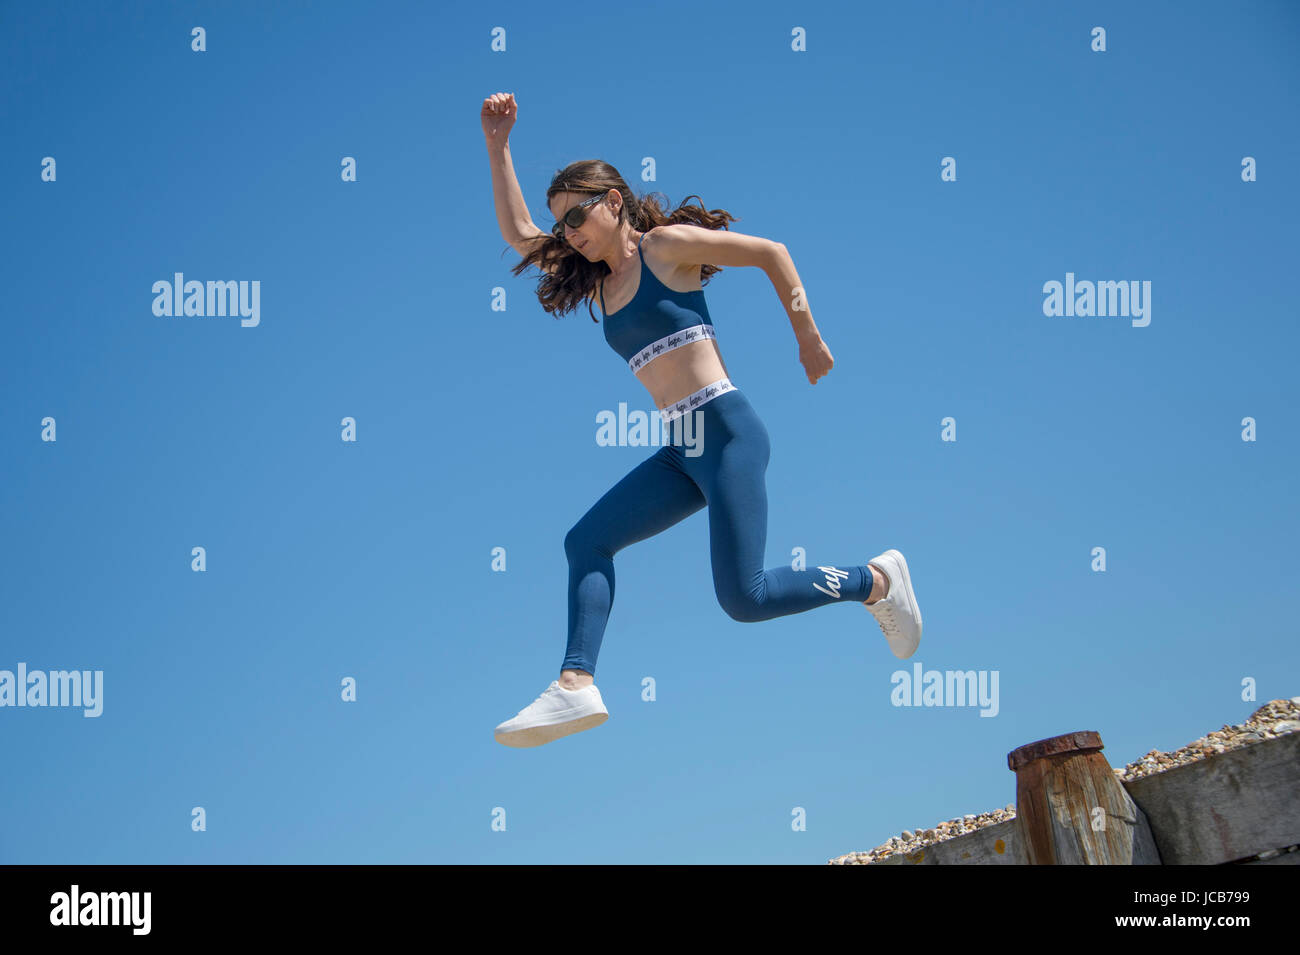 Femme faisant un saut exécuté sur la plage Banque D'Images